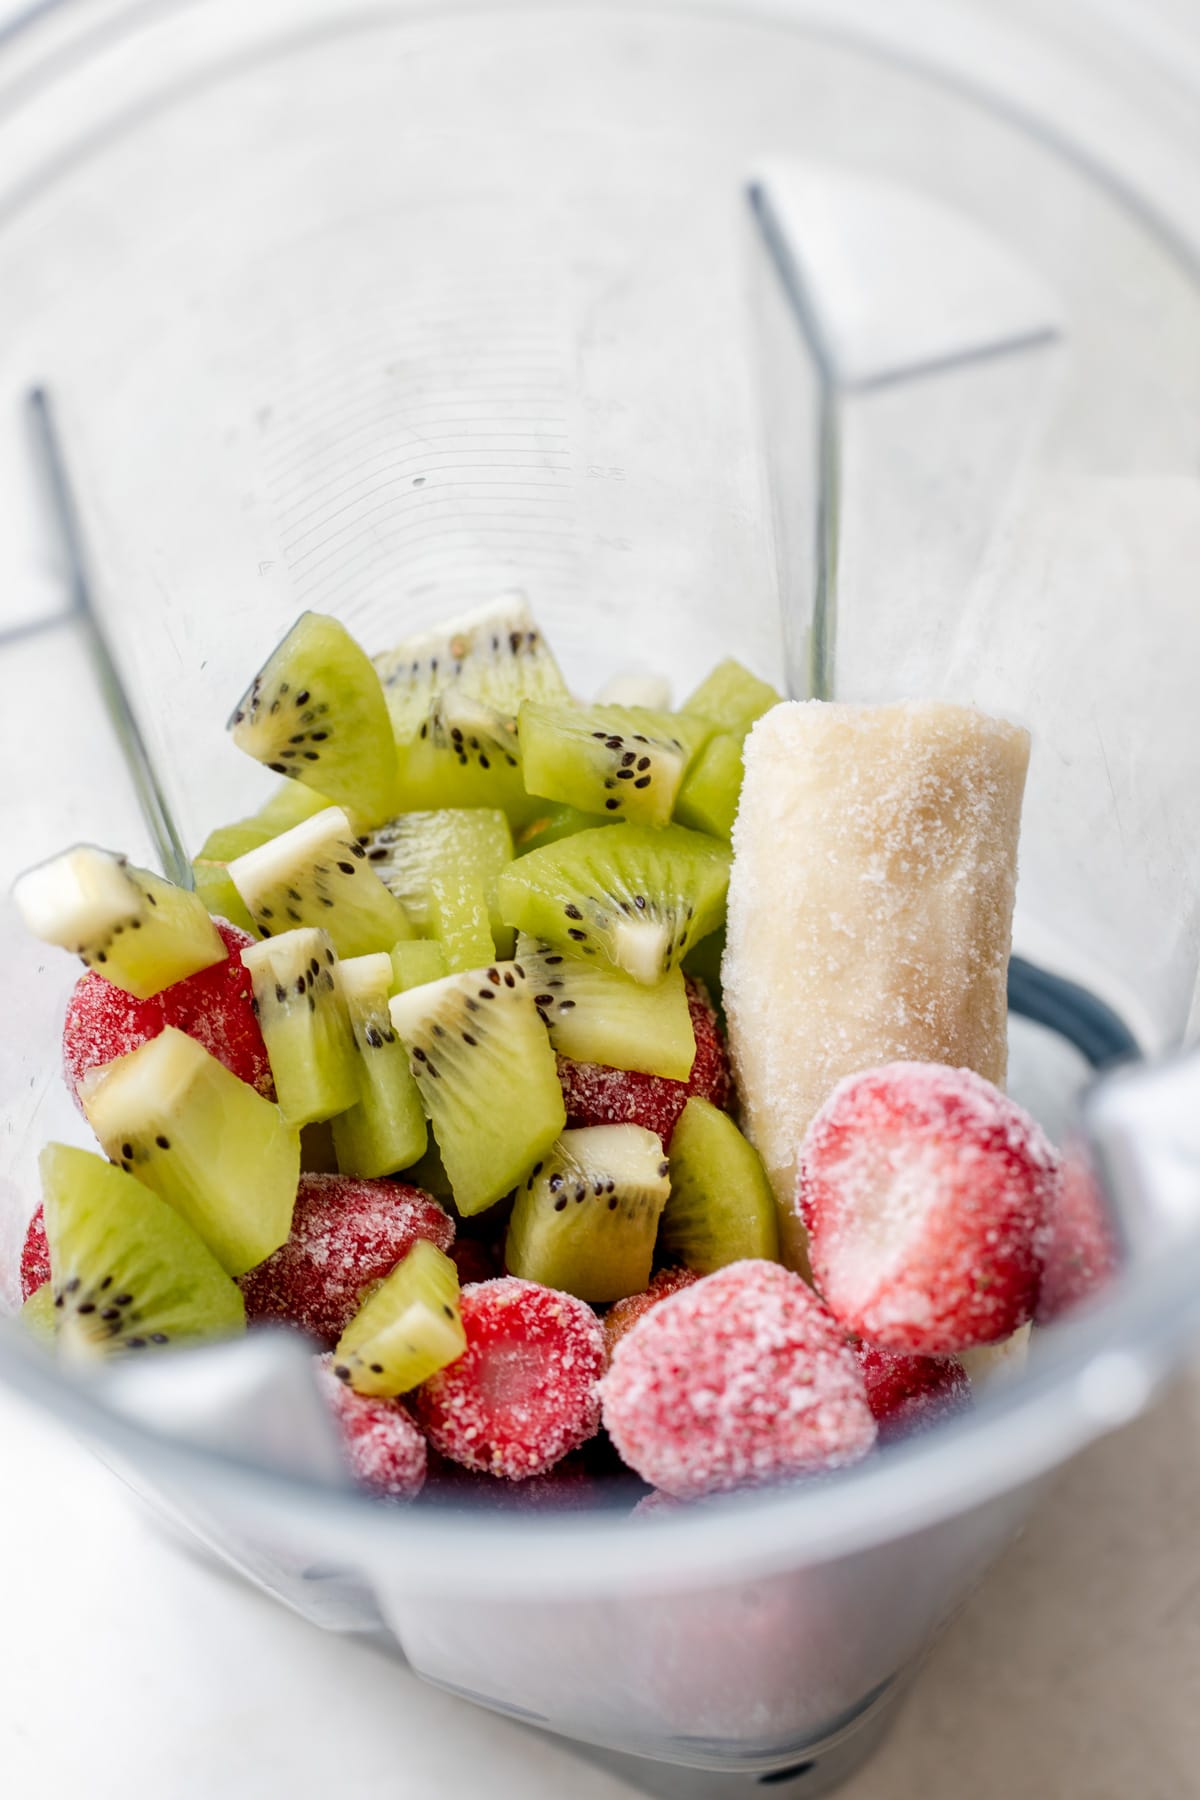 strawberries, banana and kiwi in a blender